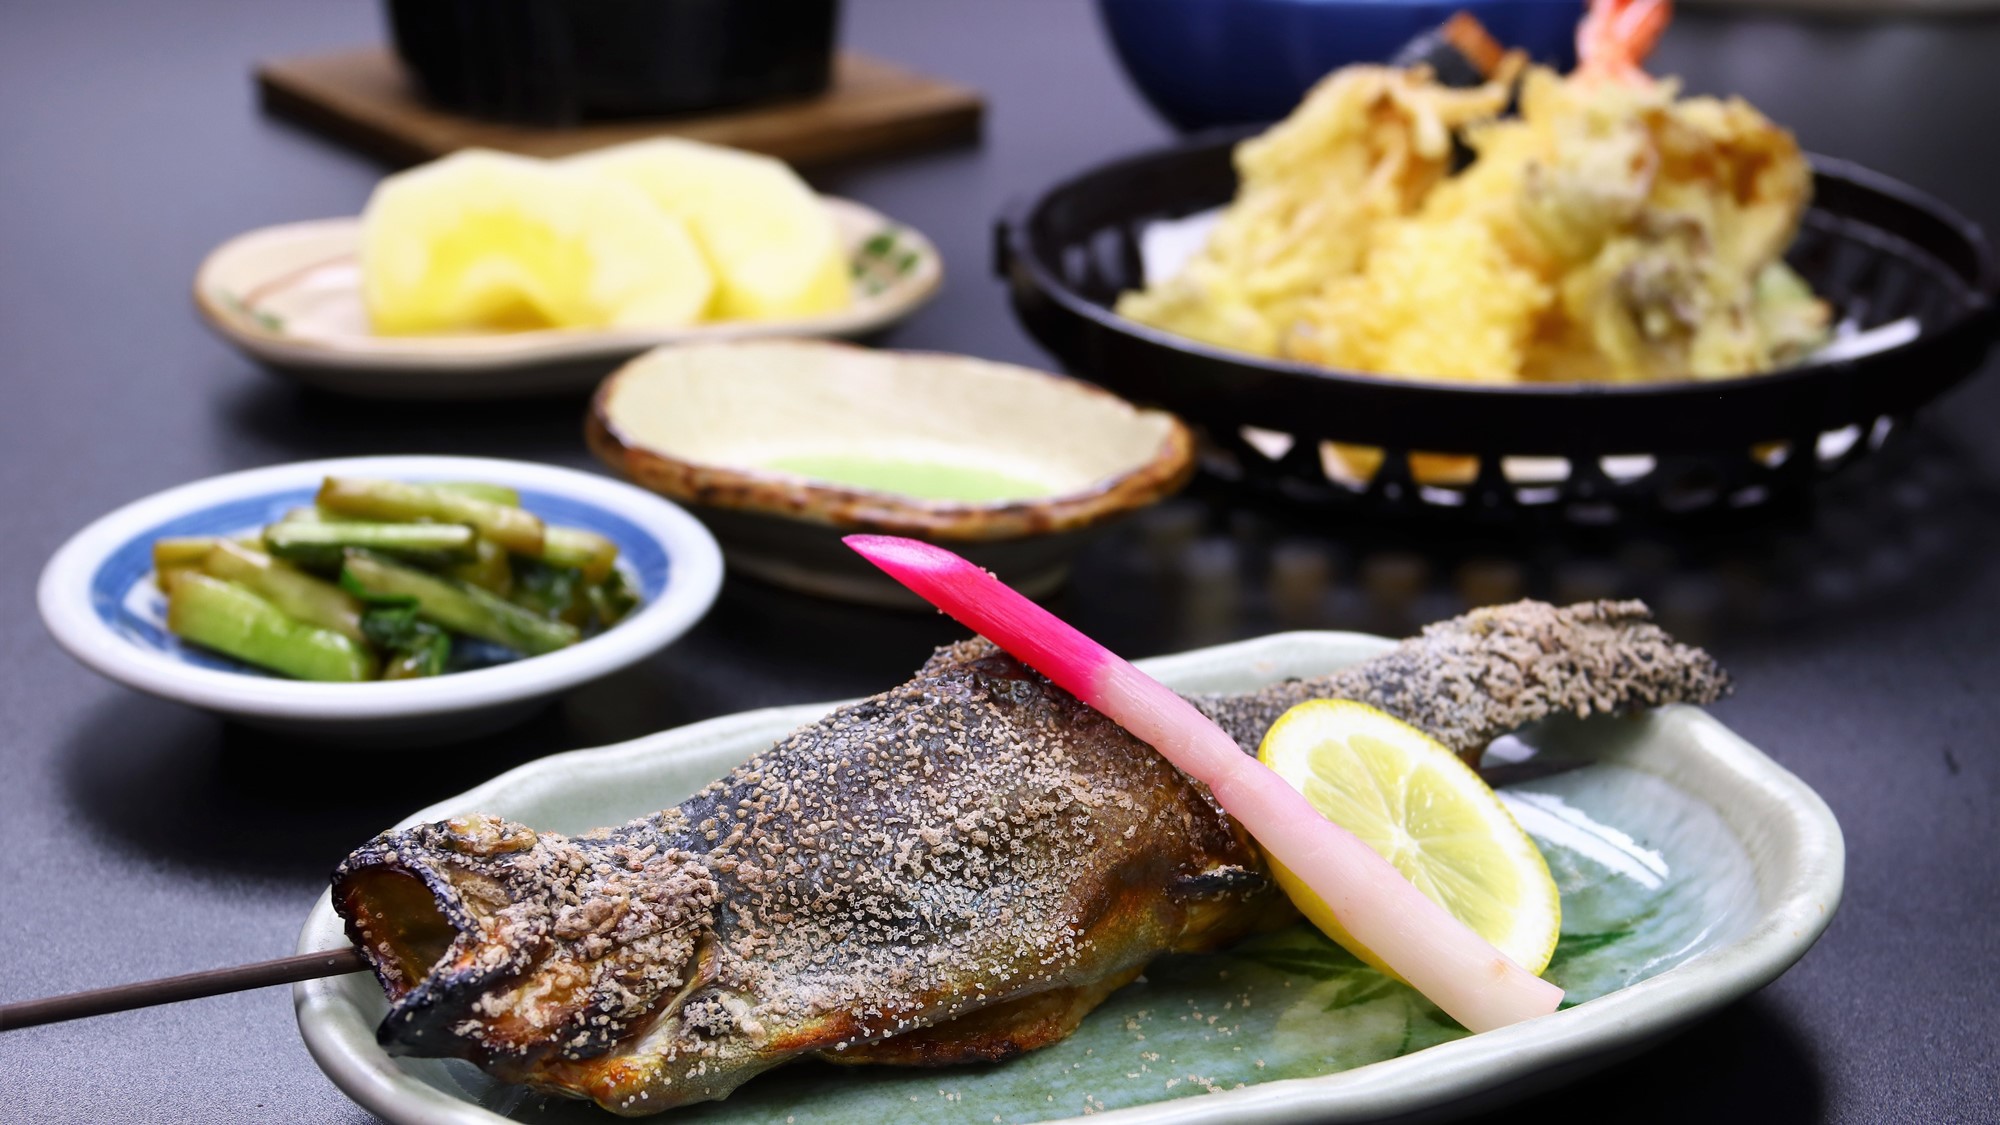 夕食一例。地物の川魚や自家製野菜、時期によっては山菜やきのこと、地産の食材を使用したお料理